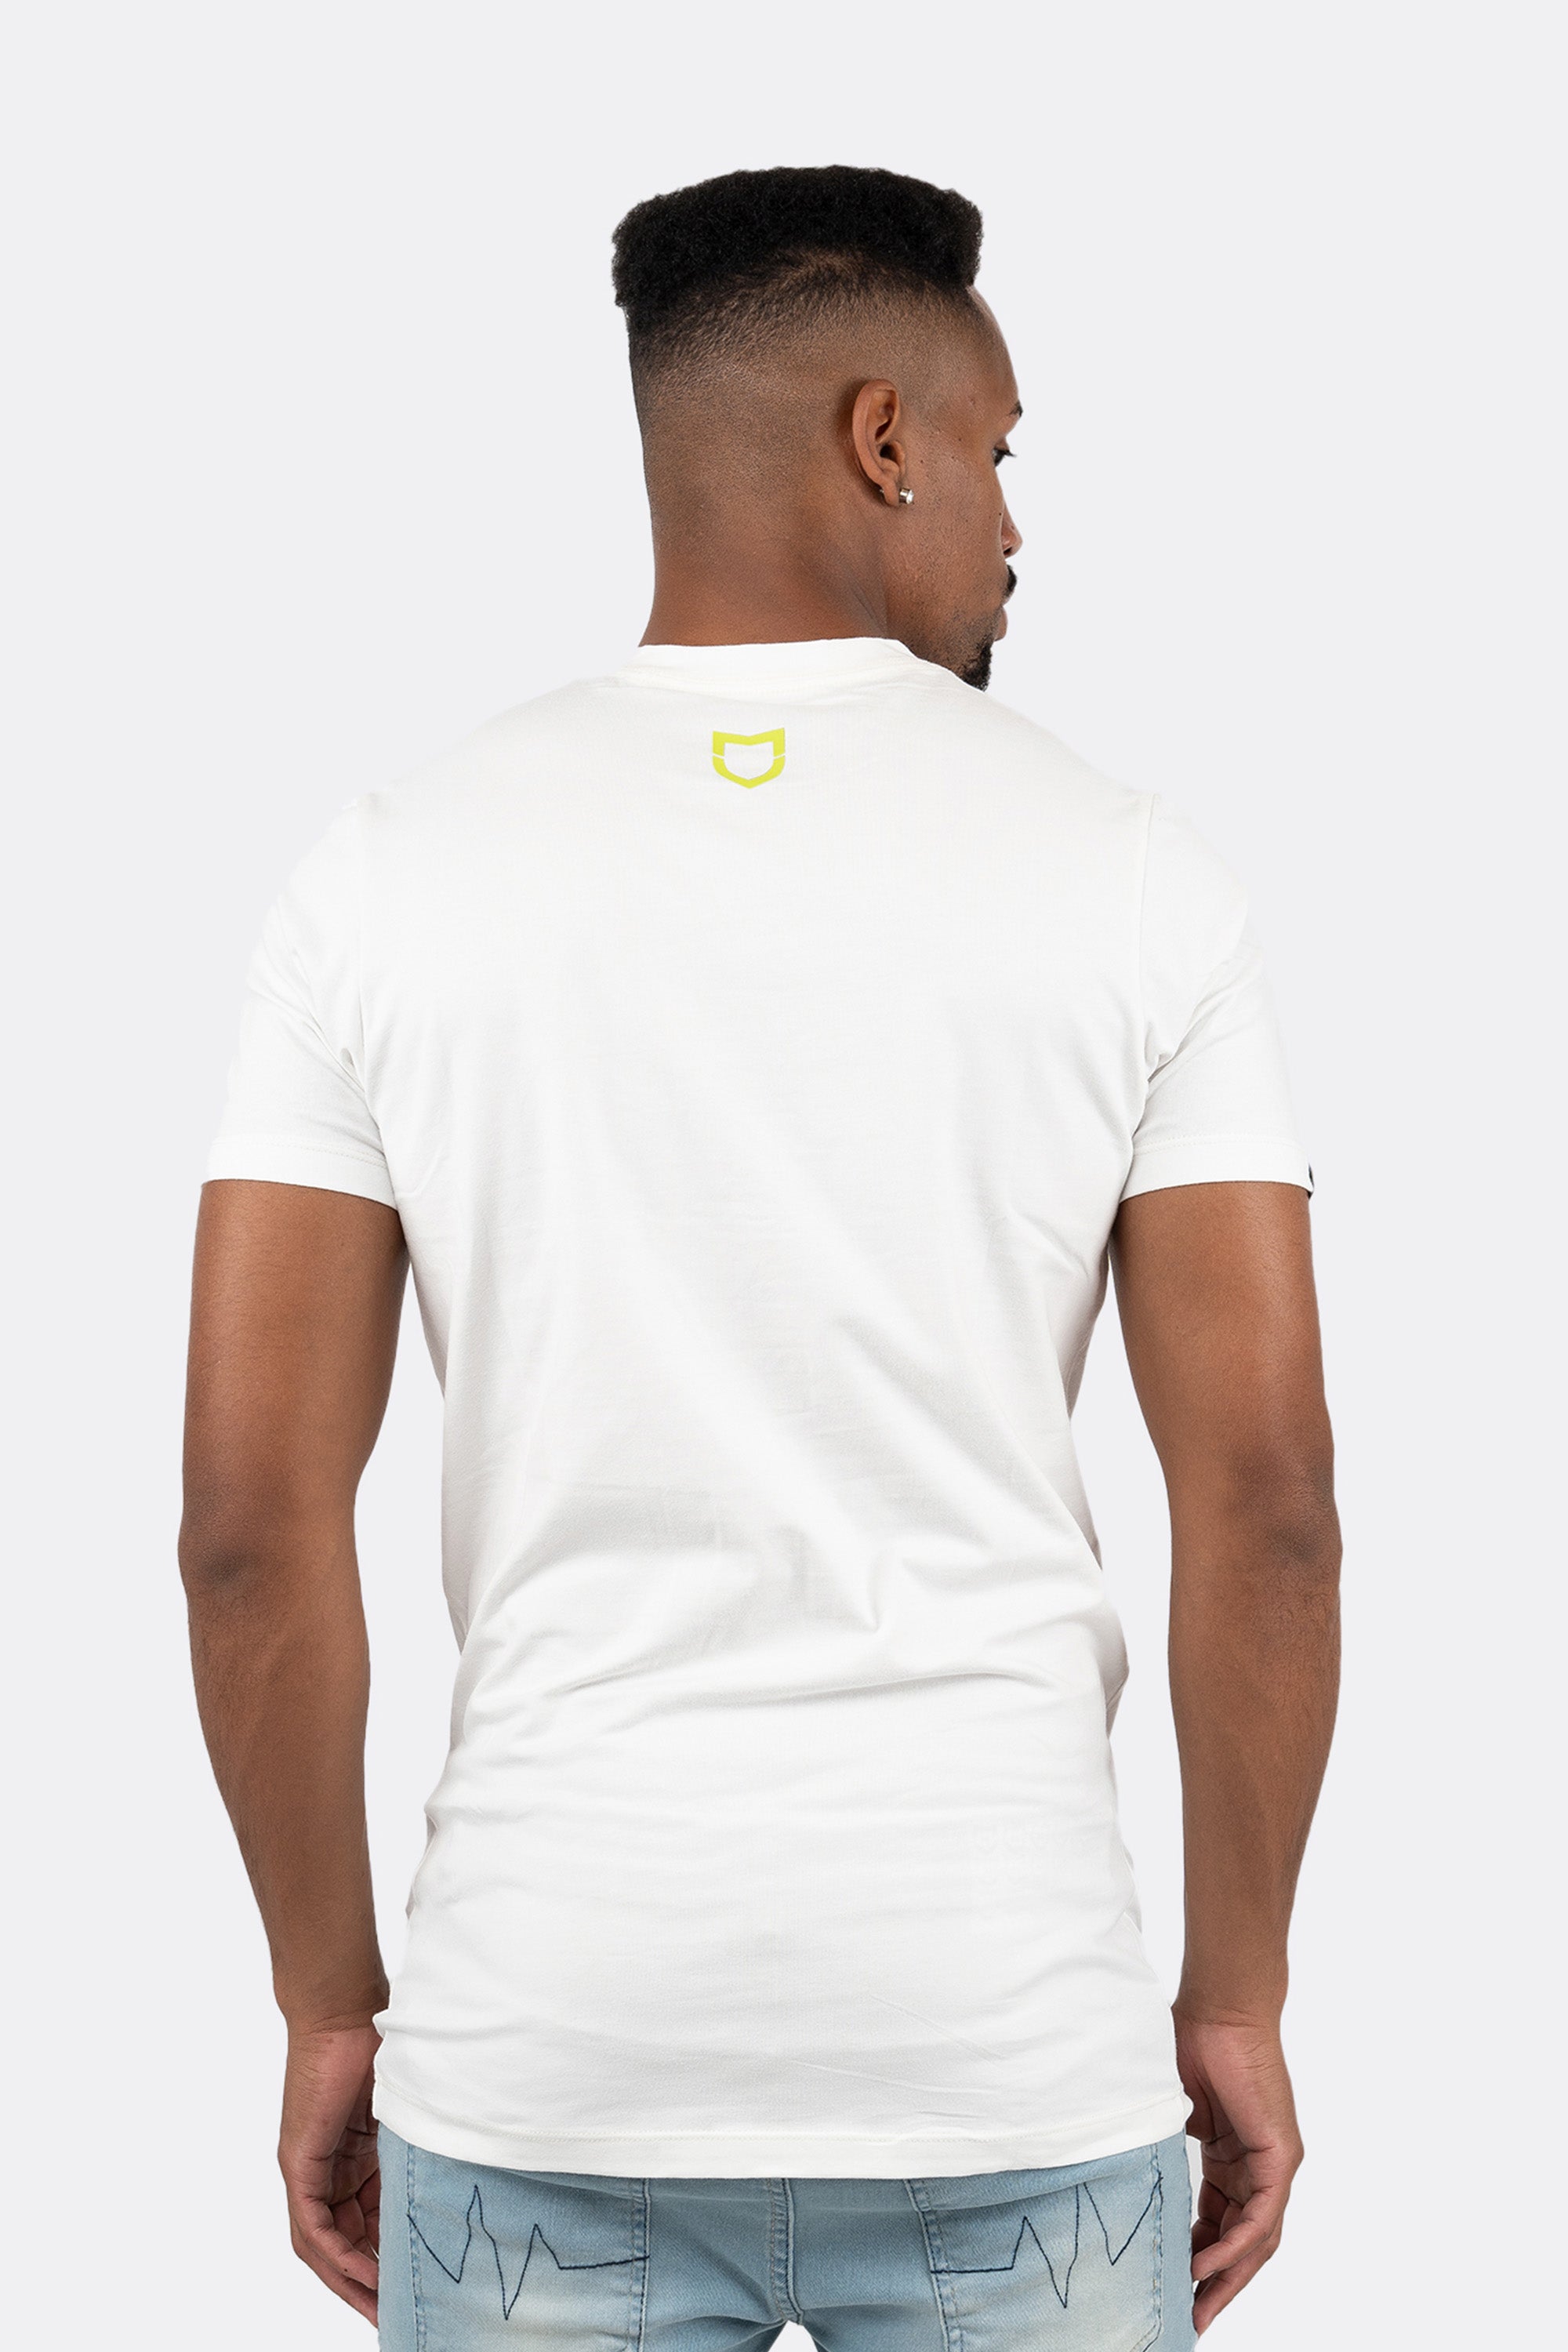 Camiseta Emive Long Starting Branco